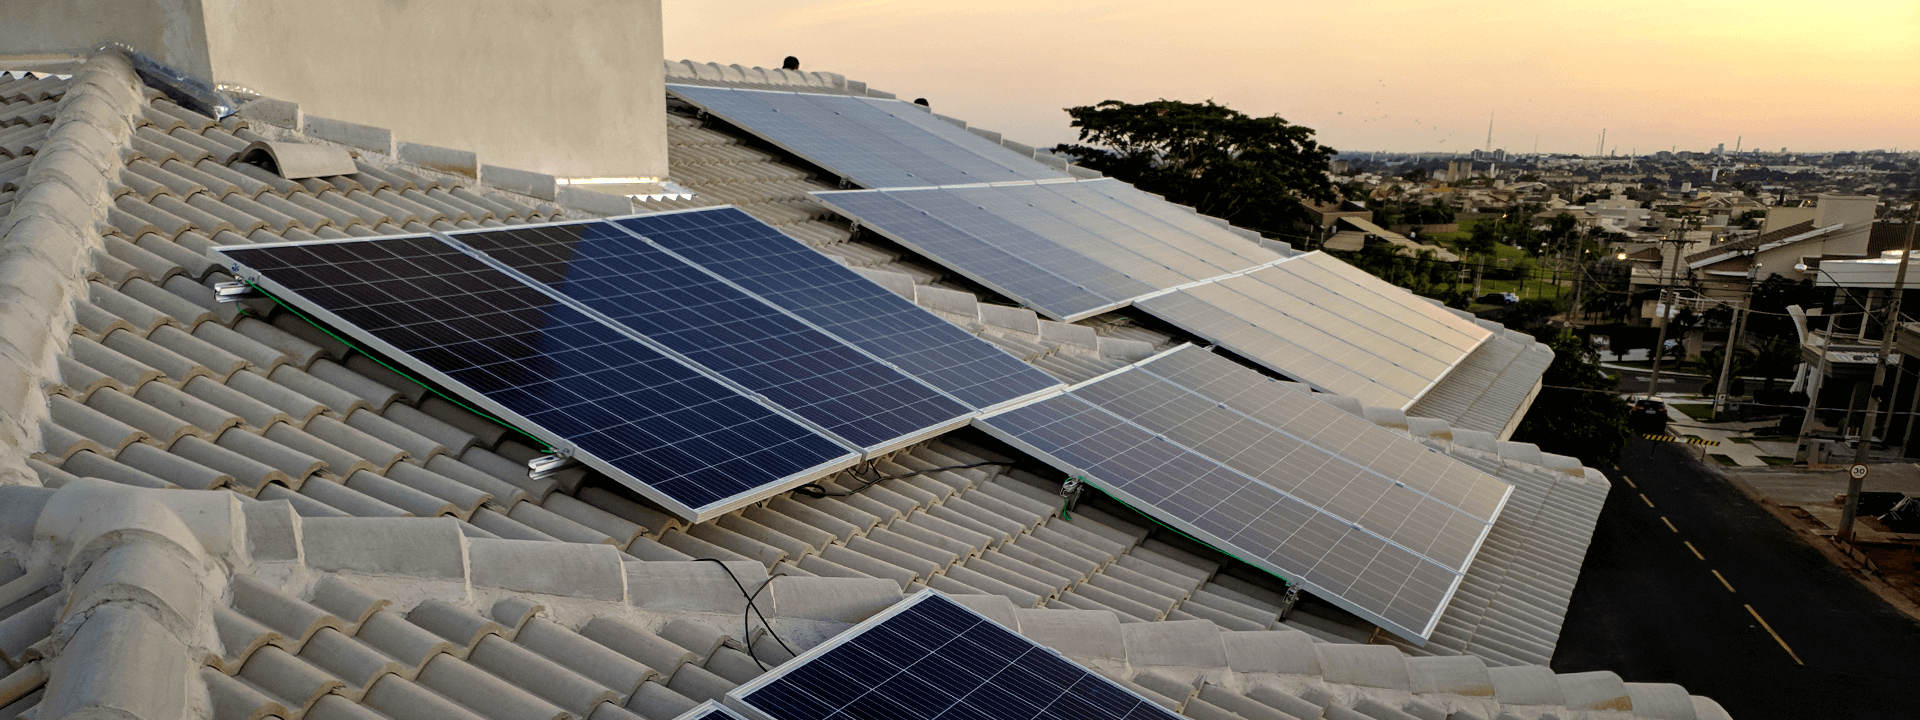 ENERGIA SOLAR - SÃO JOSÉ DO RIO PRETO - Quanto custa um painel solar